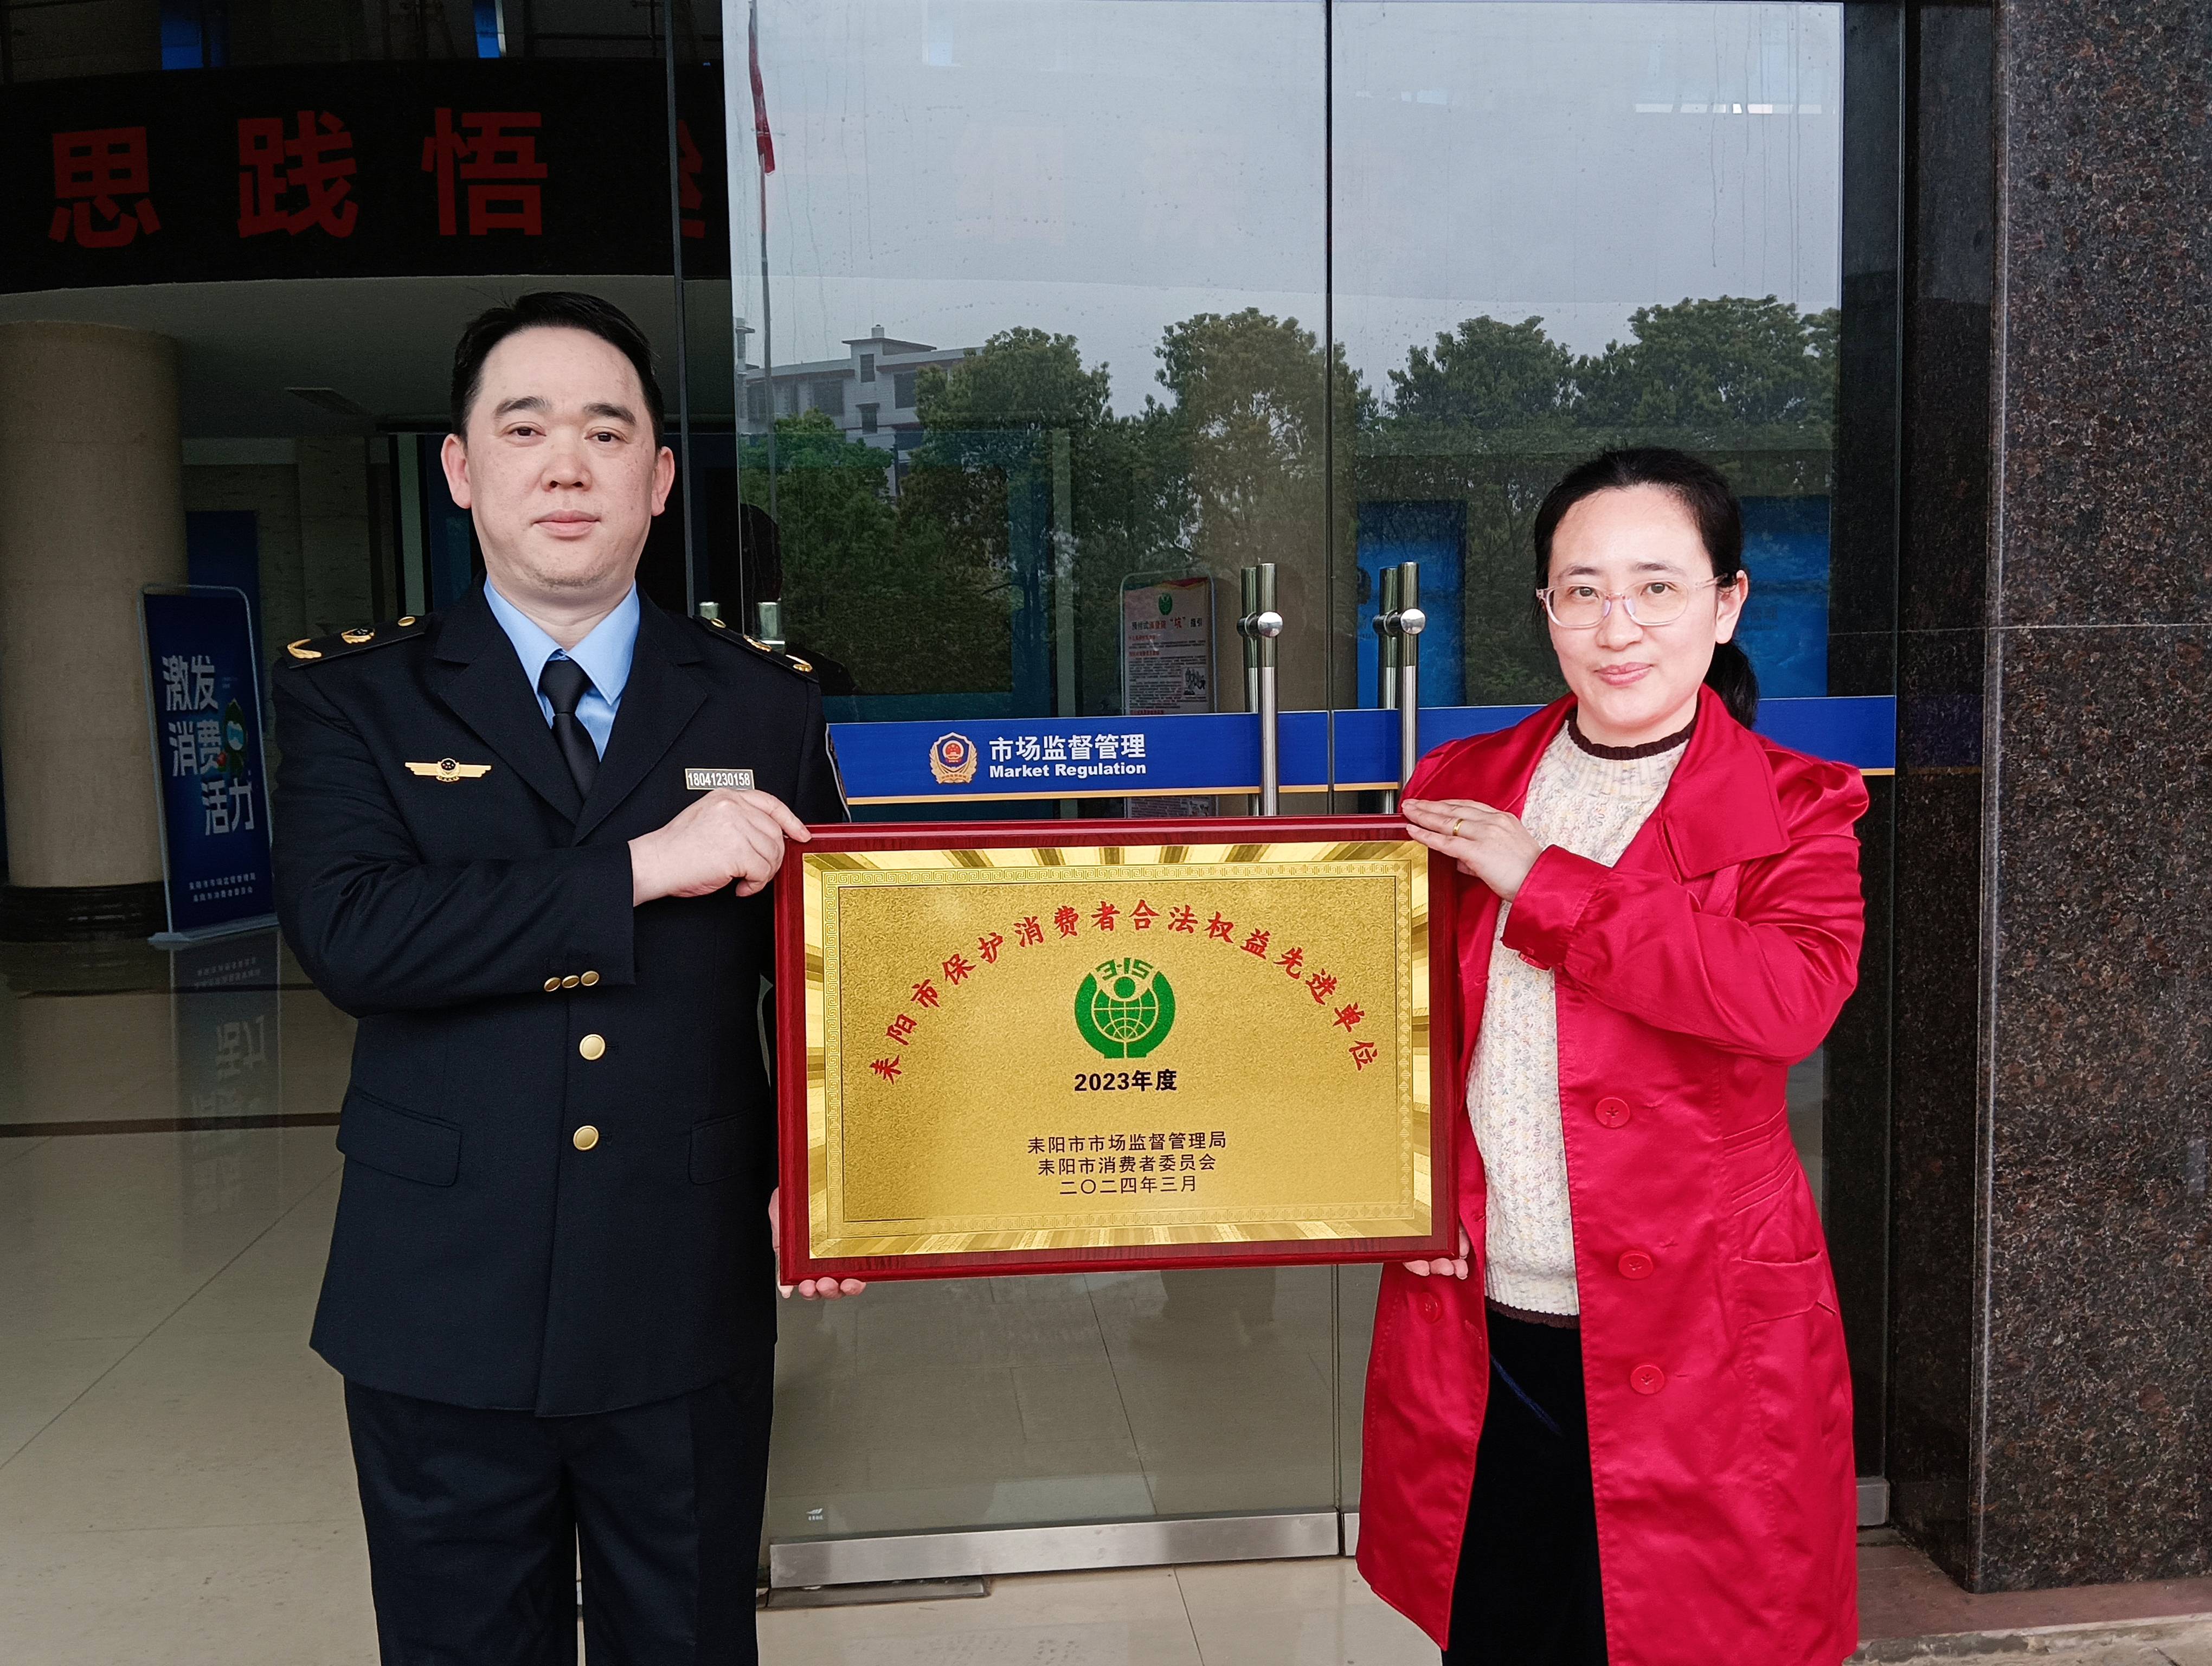 再添新名誉，刘燕酿制公司荣获消费者合法权力前辈单位